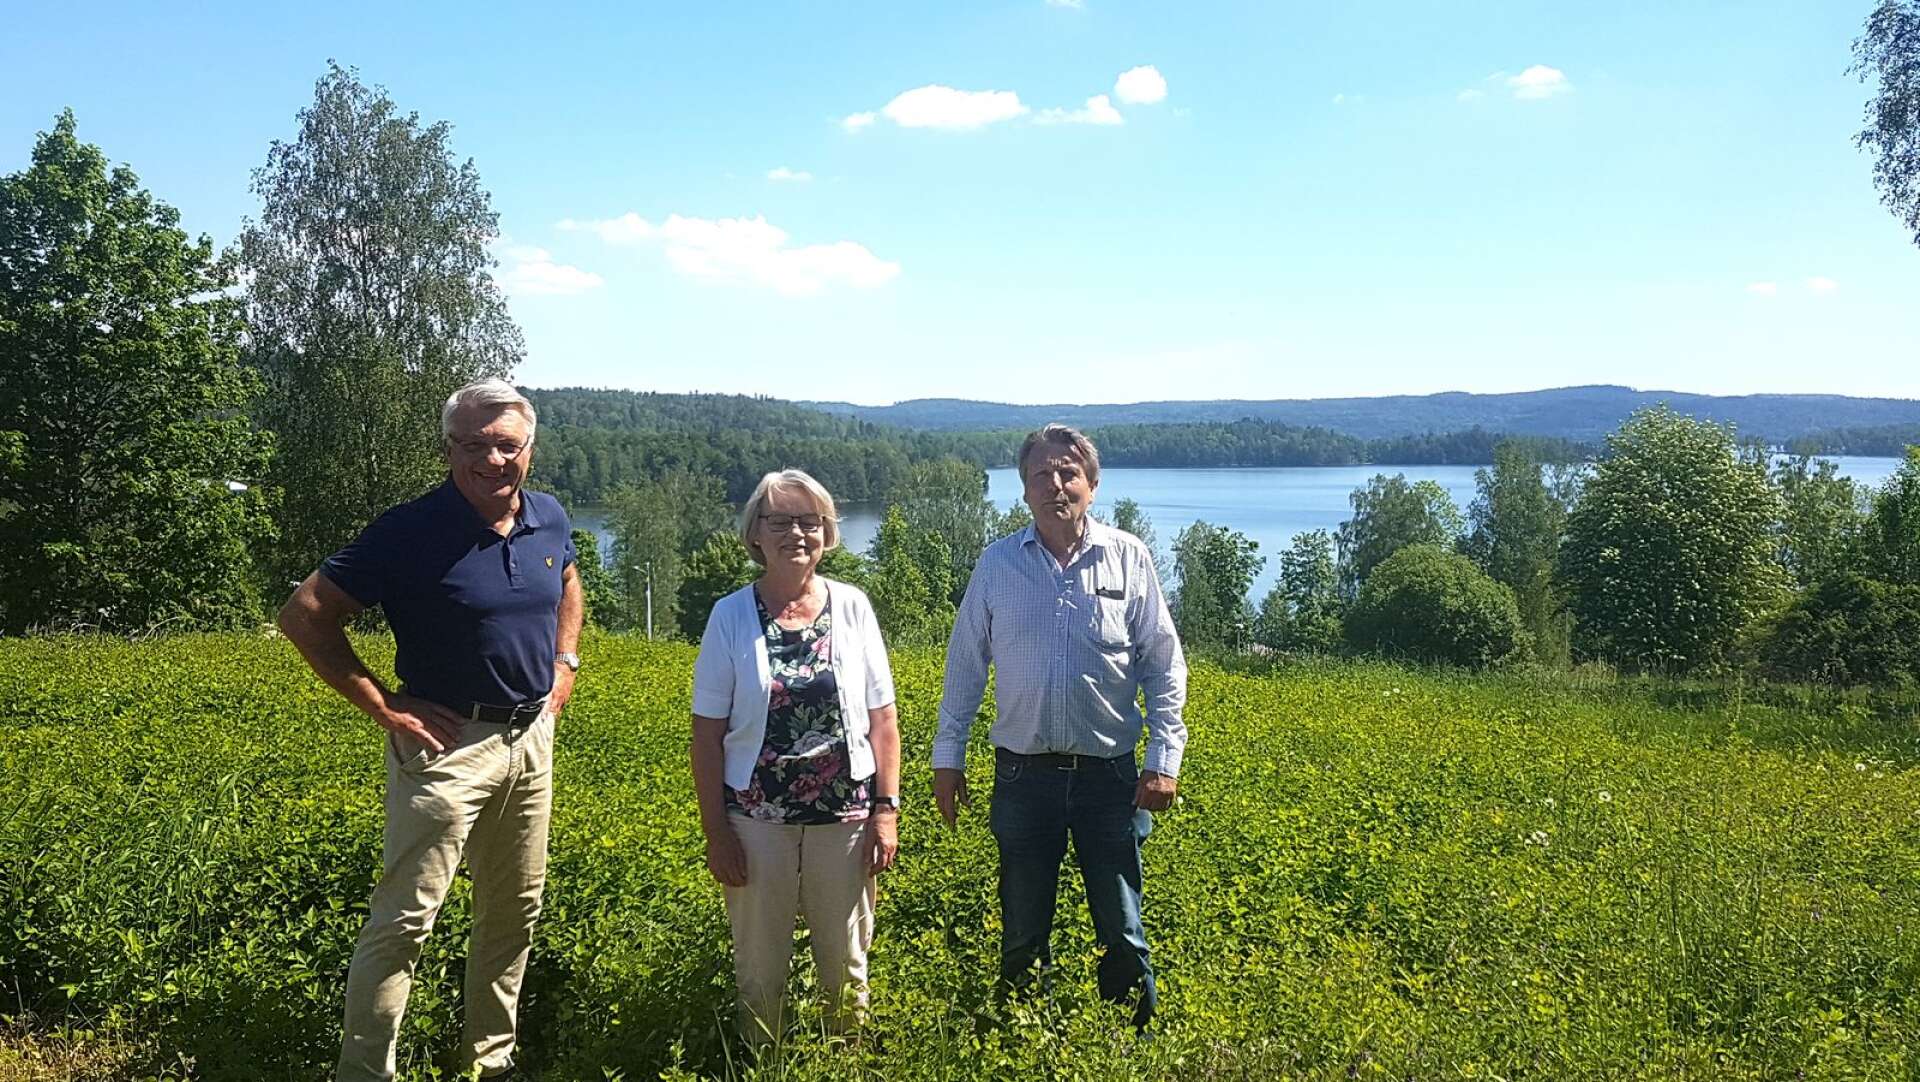 Den styrande koalitionen i kommunen Stig Bertilsson (M), Anna-Greta Strömberg (KD) och Per Jonsson (C), vill bland annat se nyproduktion av bostäder i Billingsfors. Här visar de utsikten från en av de tilltänkta tomterna med utsikt över Laxsjön.